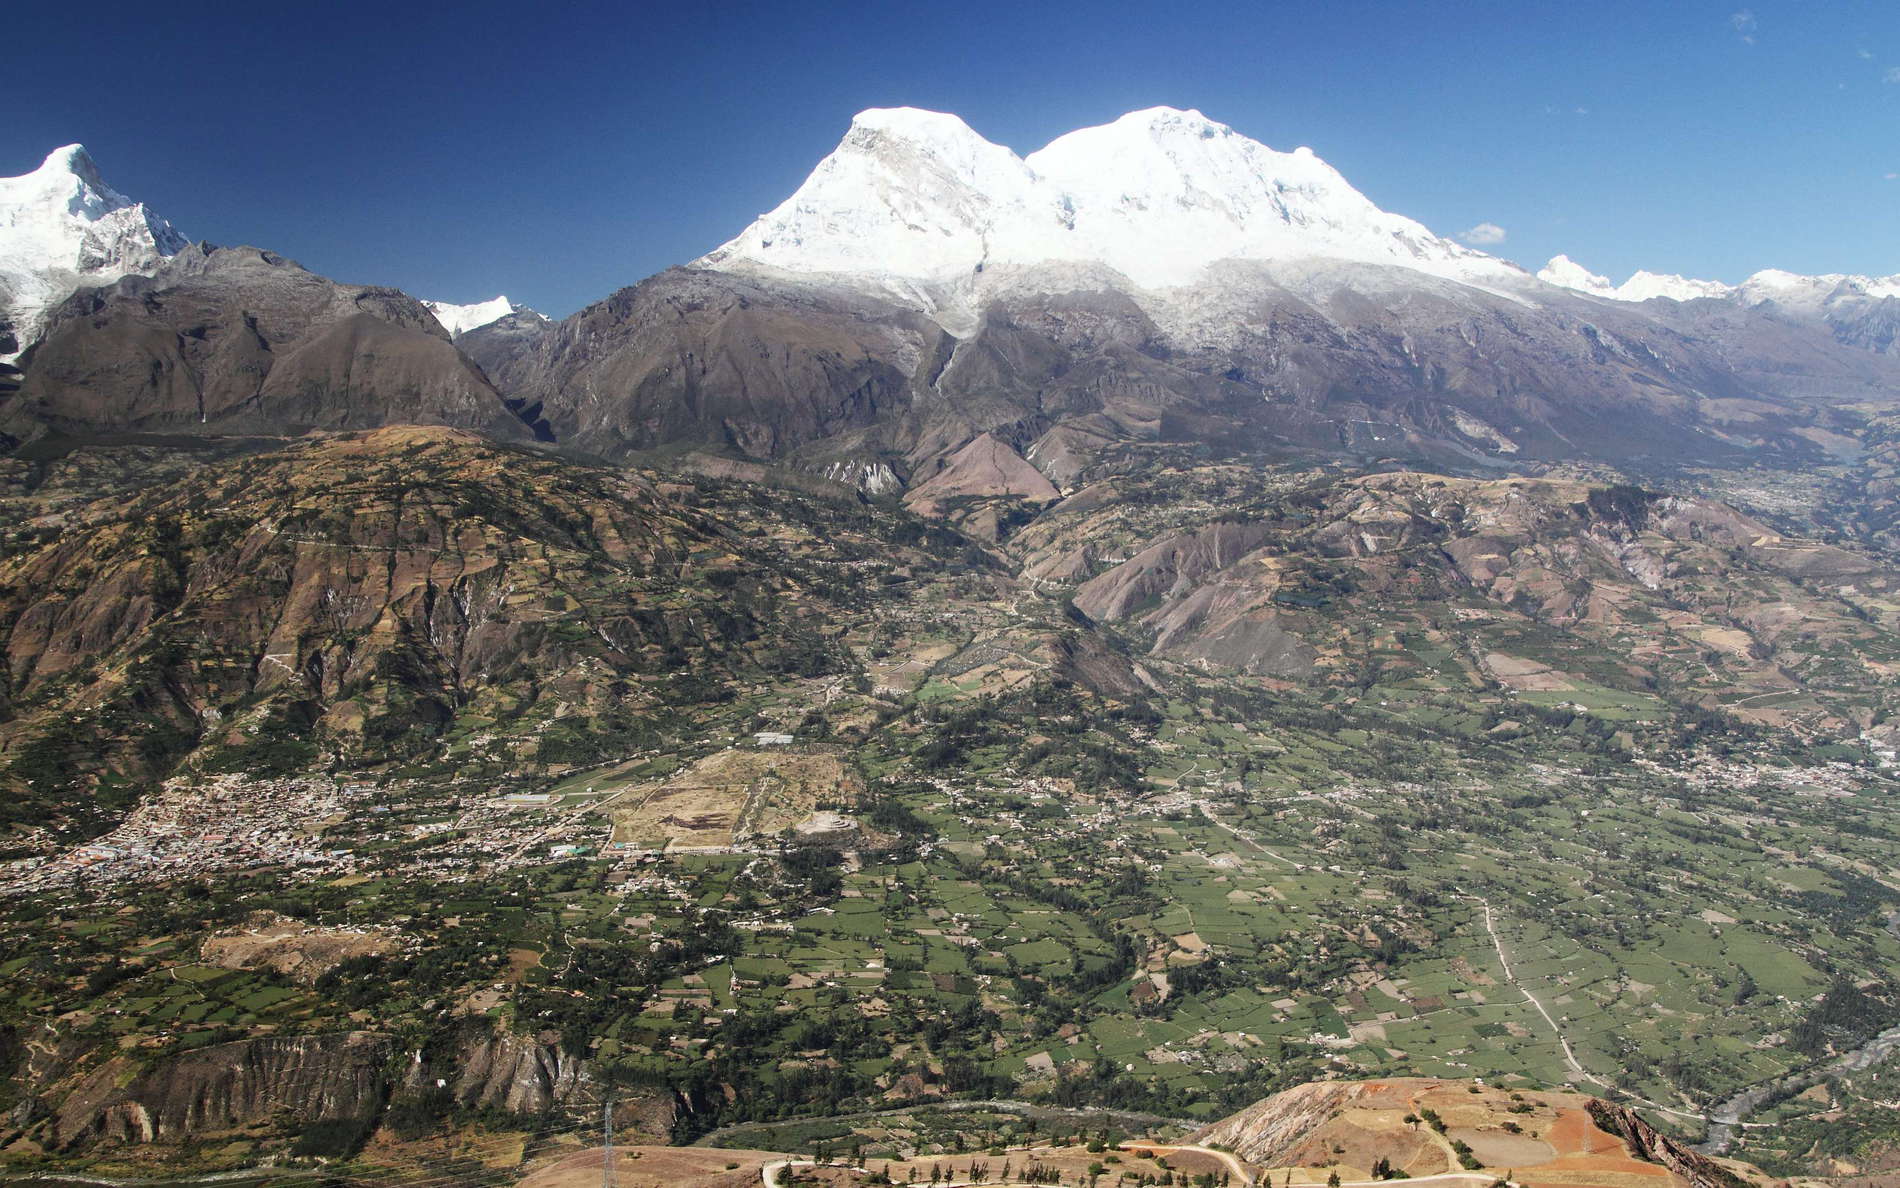 Callejón de Huaylas with Nevado Huascarán